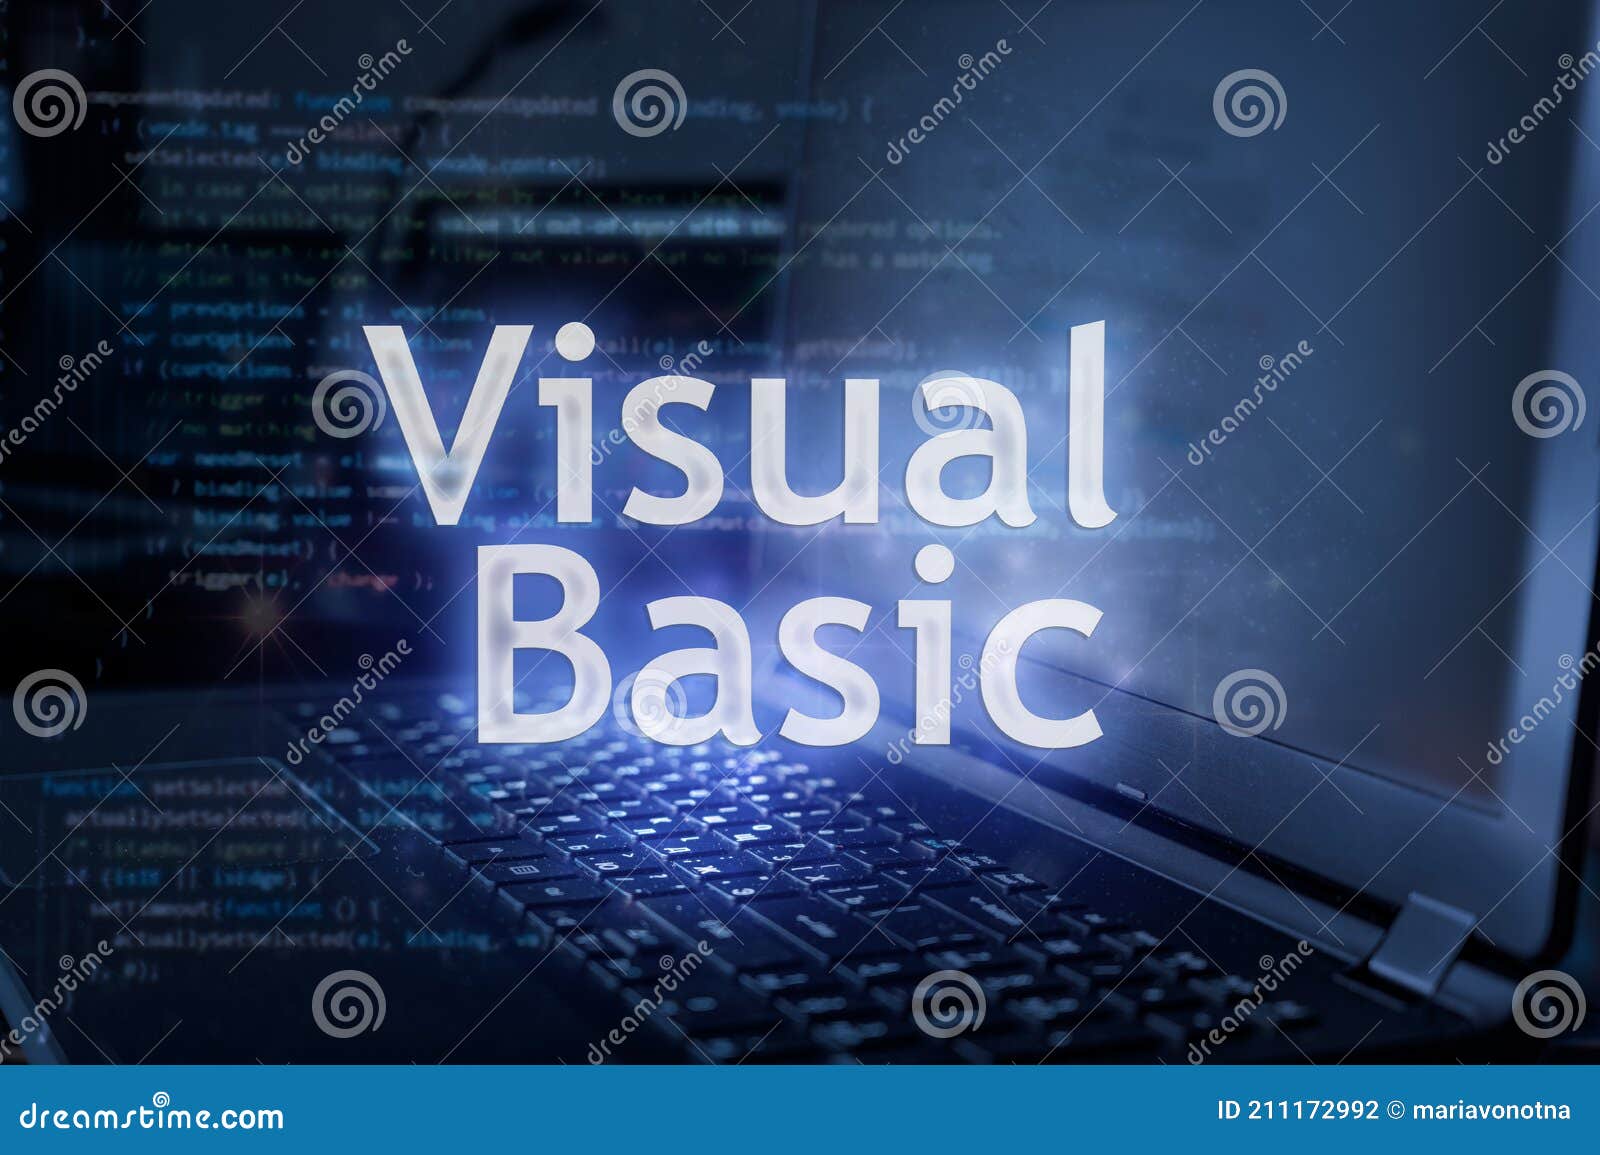 visual basic programming language